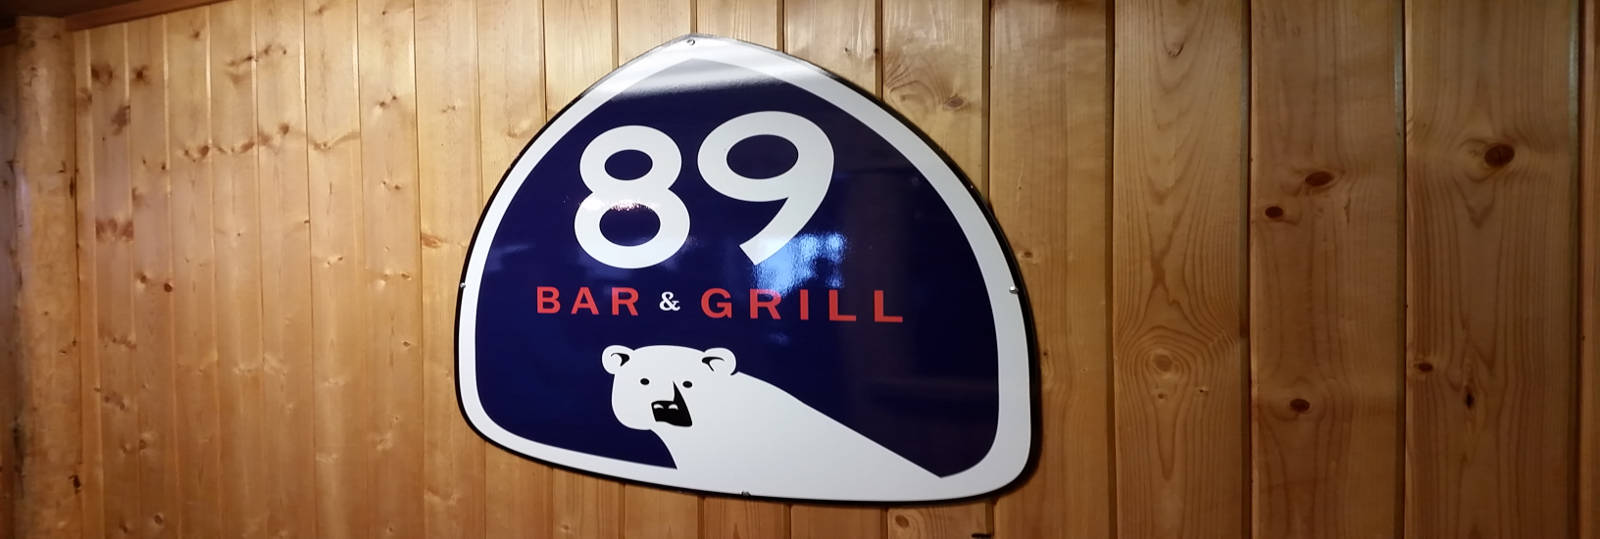 Apres Ski at 89 Bar